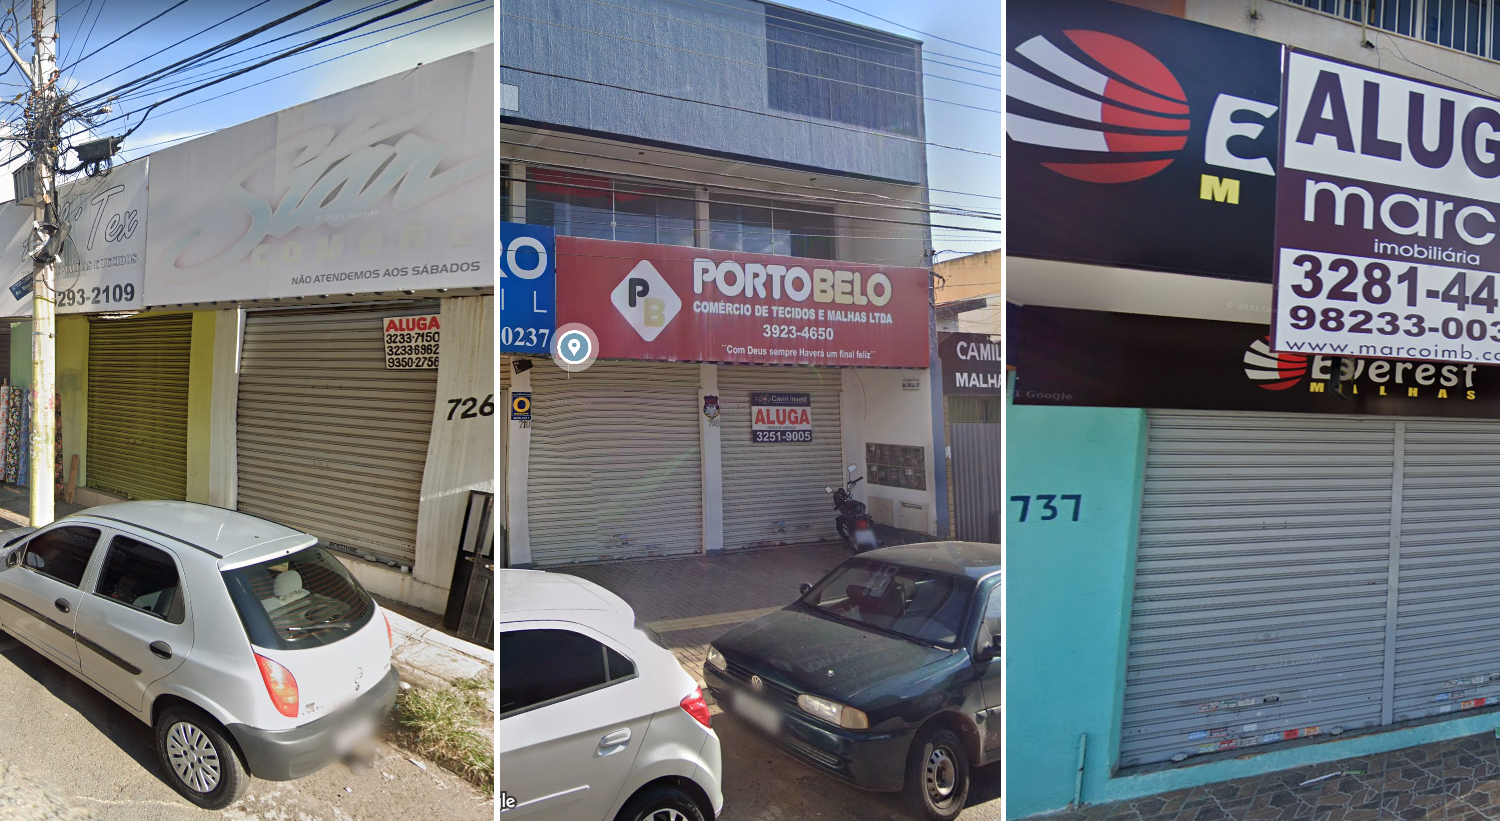 Imagem mostra três lojas que já estavam fechadas em abril de 2019 no local da gravação